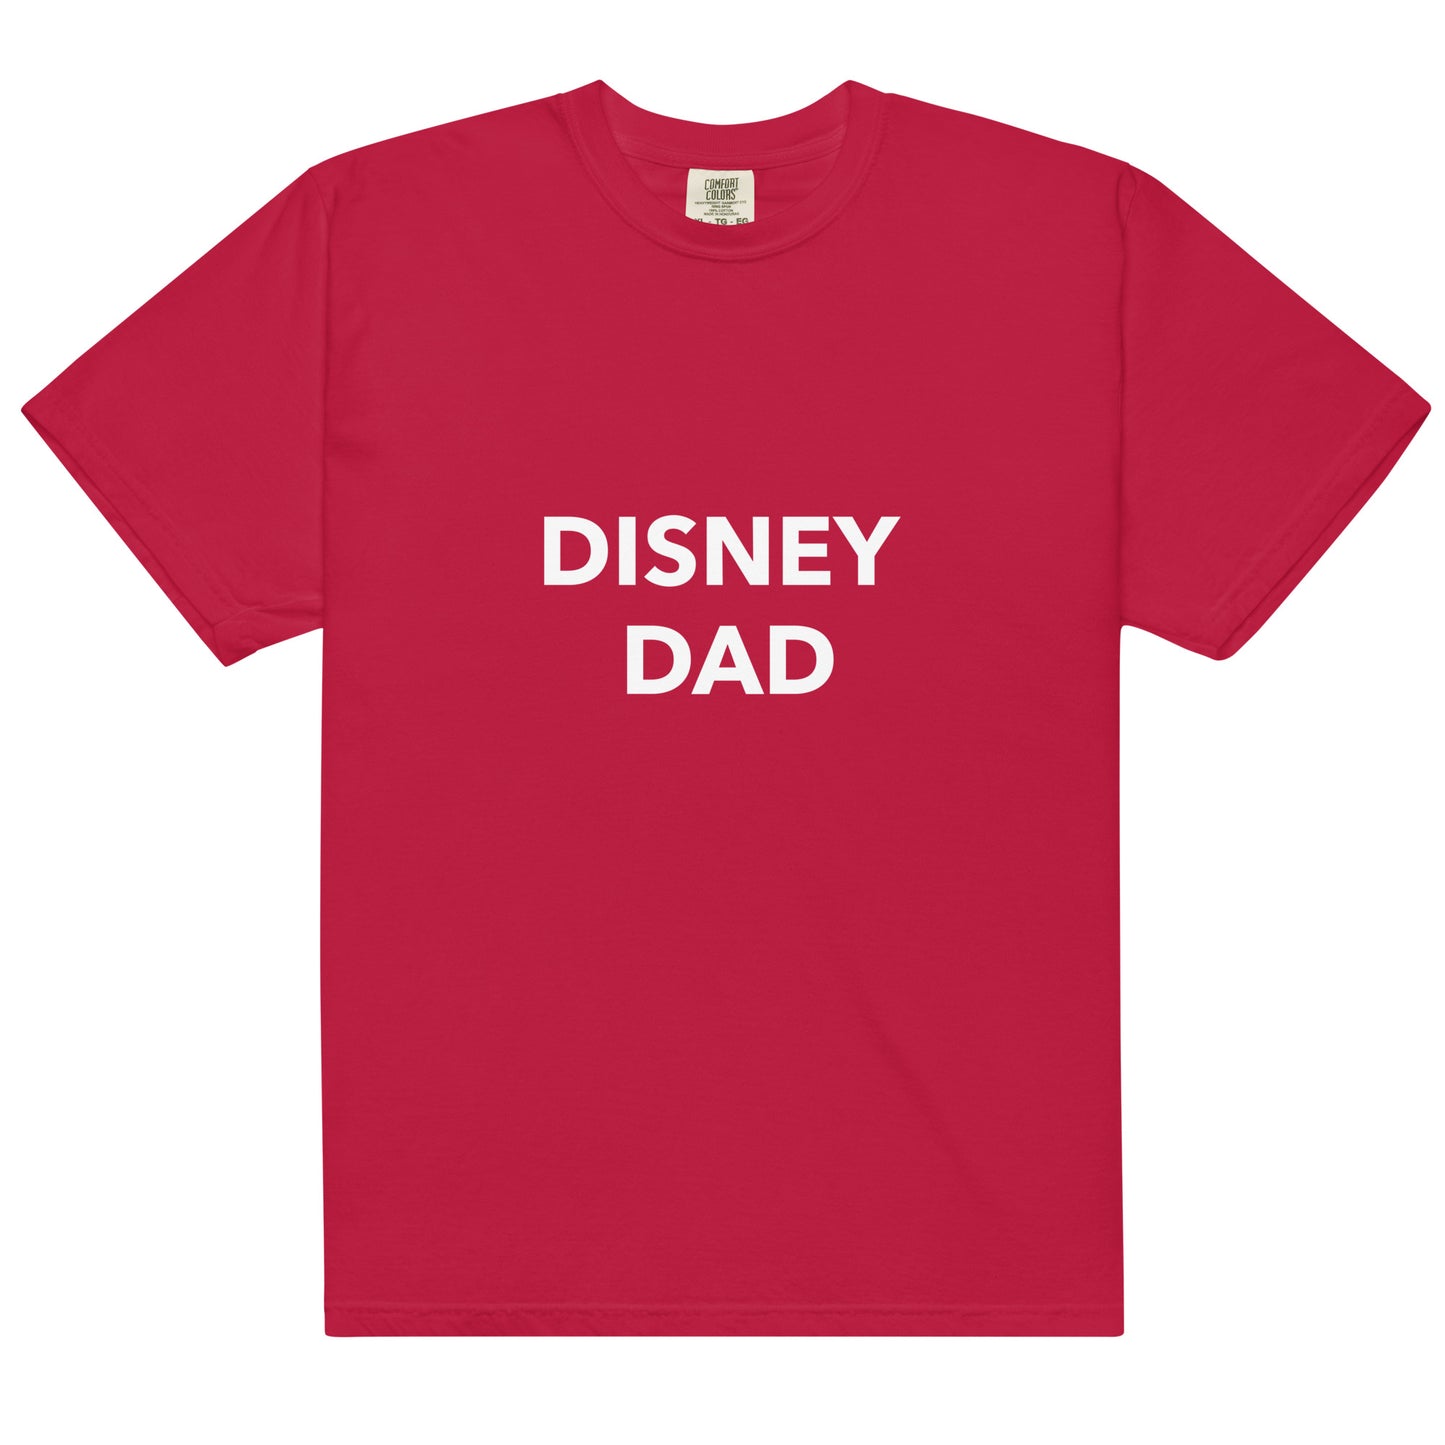 Disney Dad Printed Plain Tshirt